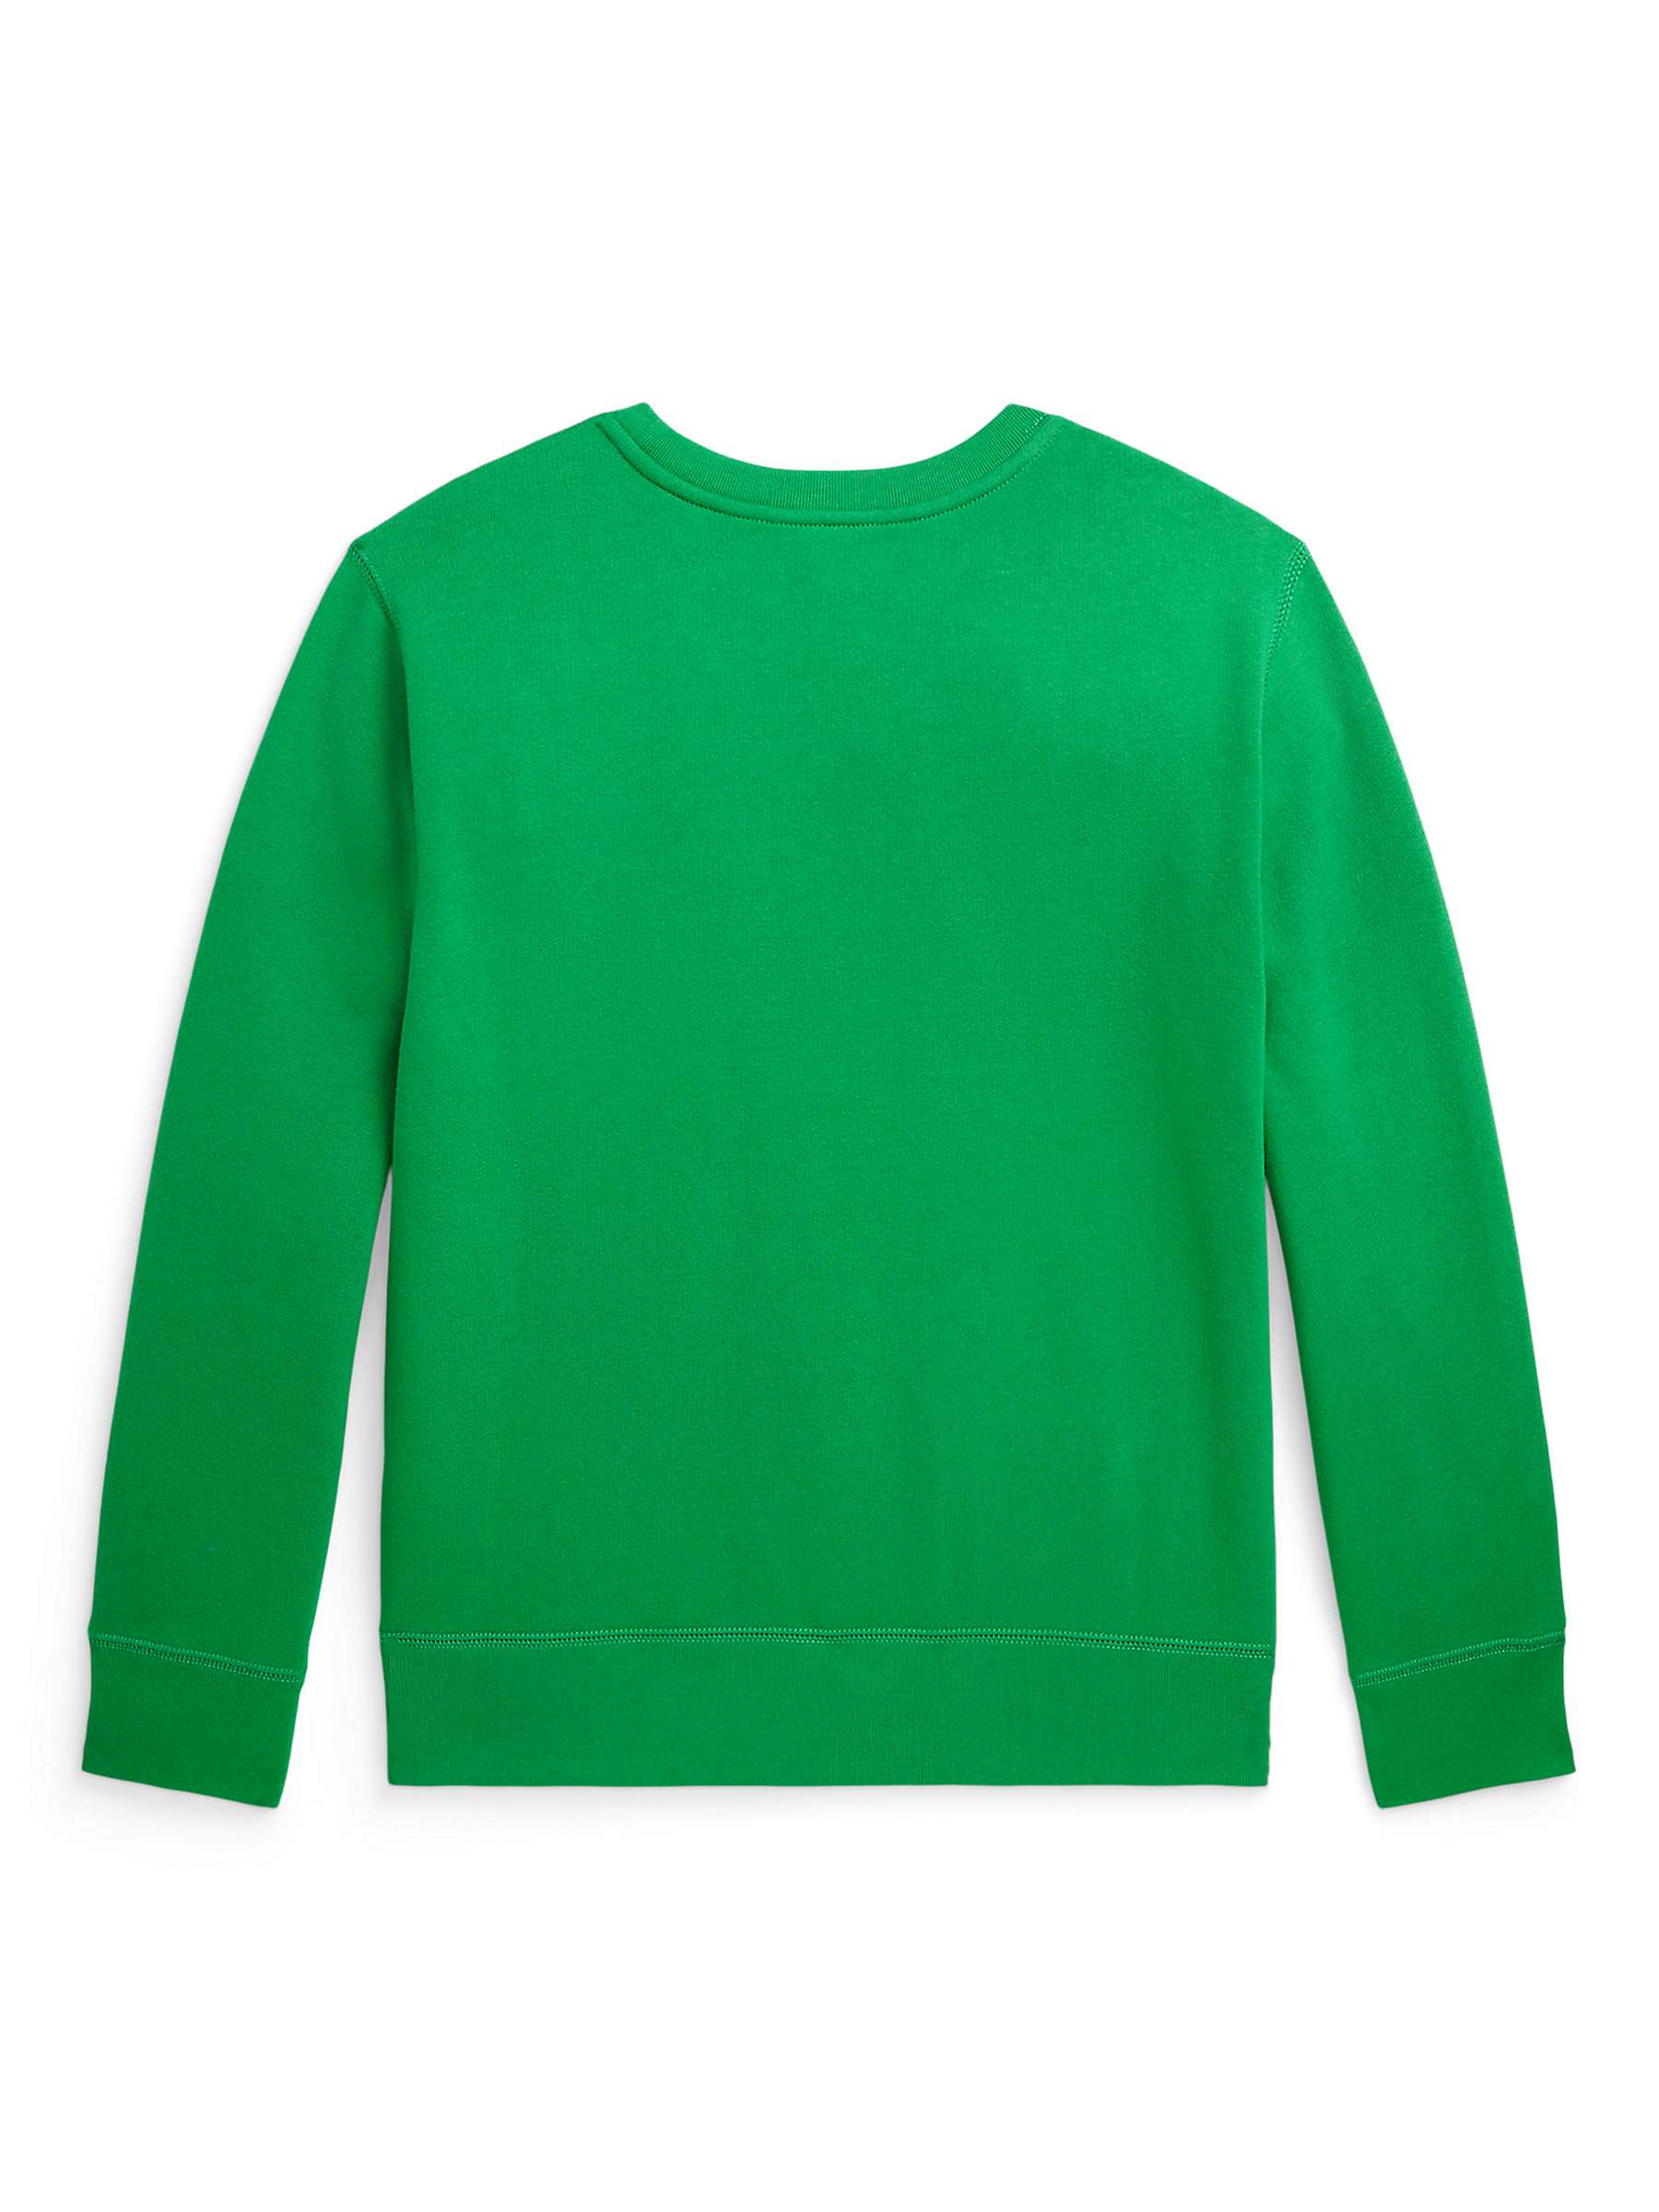 Buy Ralph Lauren Kids' Fleece Sweatshirt, Preppy Green Online at johnlewis.com